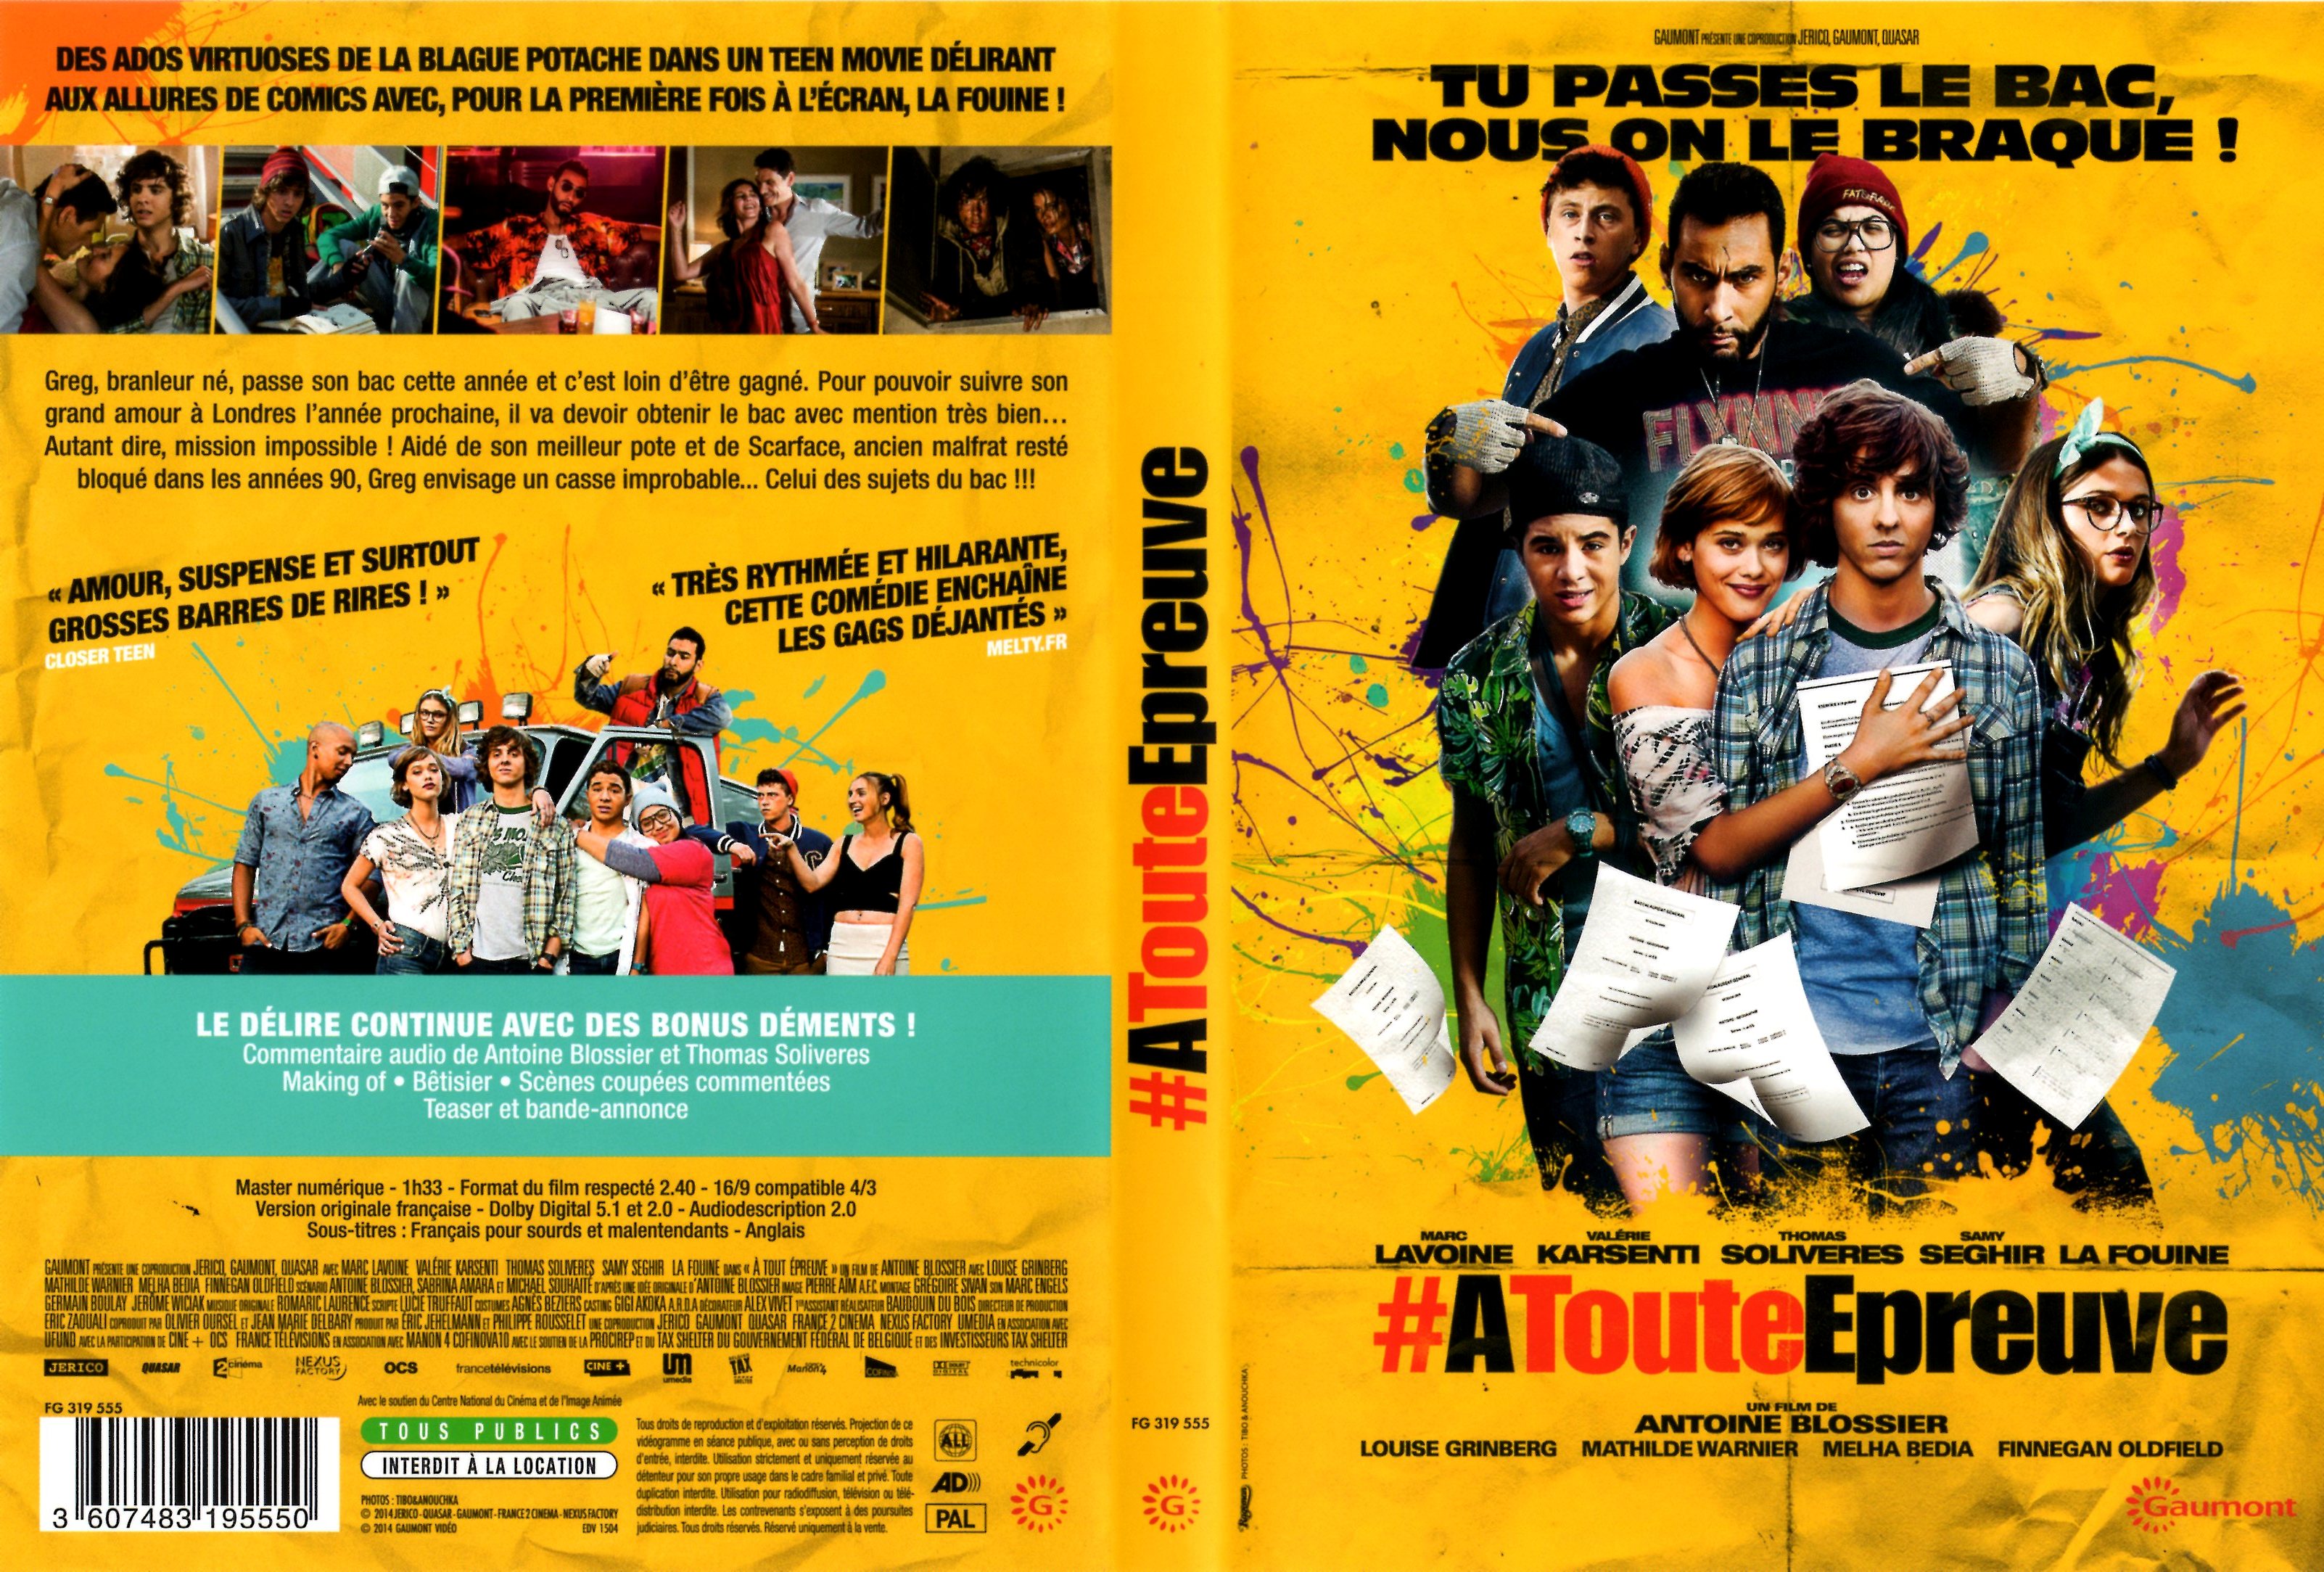 Jaquette DVD A toute preuve (2014)